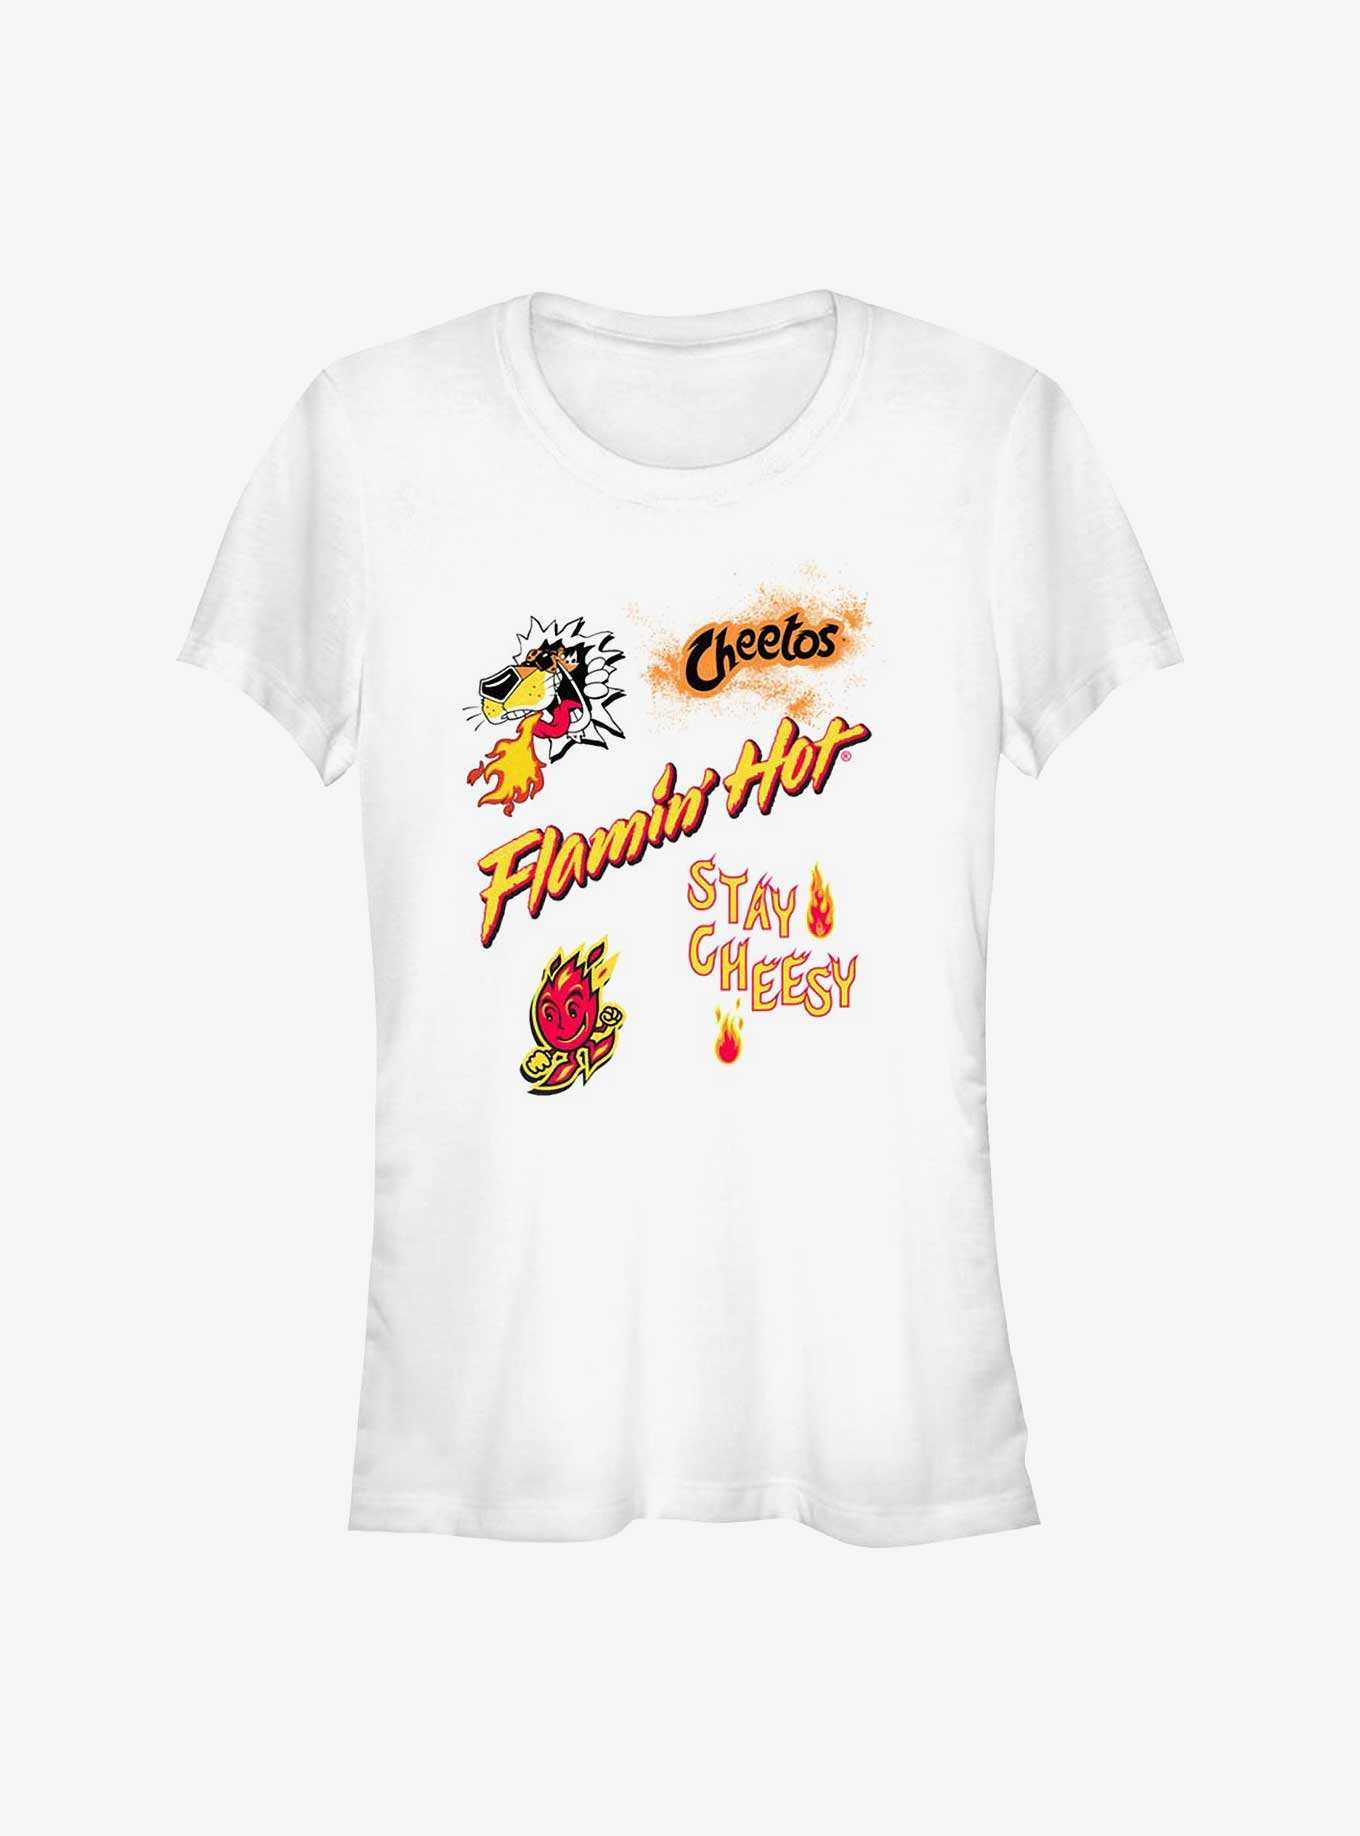 Cheetos Flamin Hot Stay Cheesy Cheetos Girls T-Shirt, , hi-res